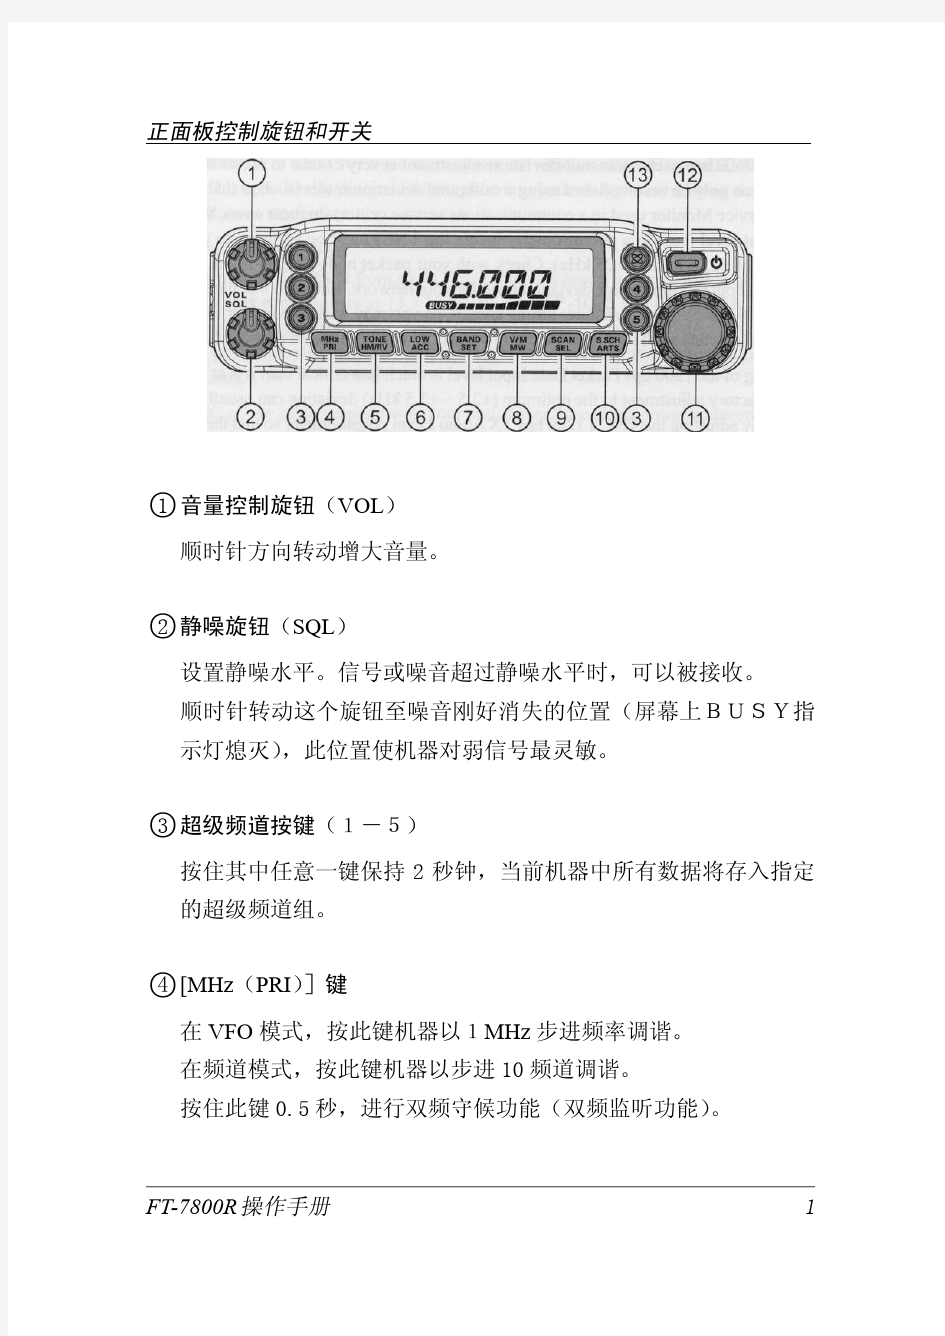 八重洲FT7800车载电台中文说明书